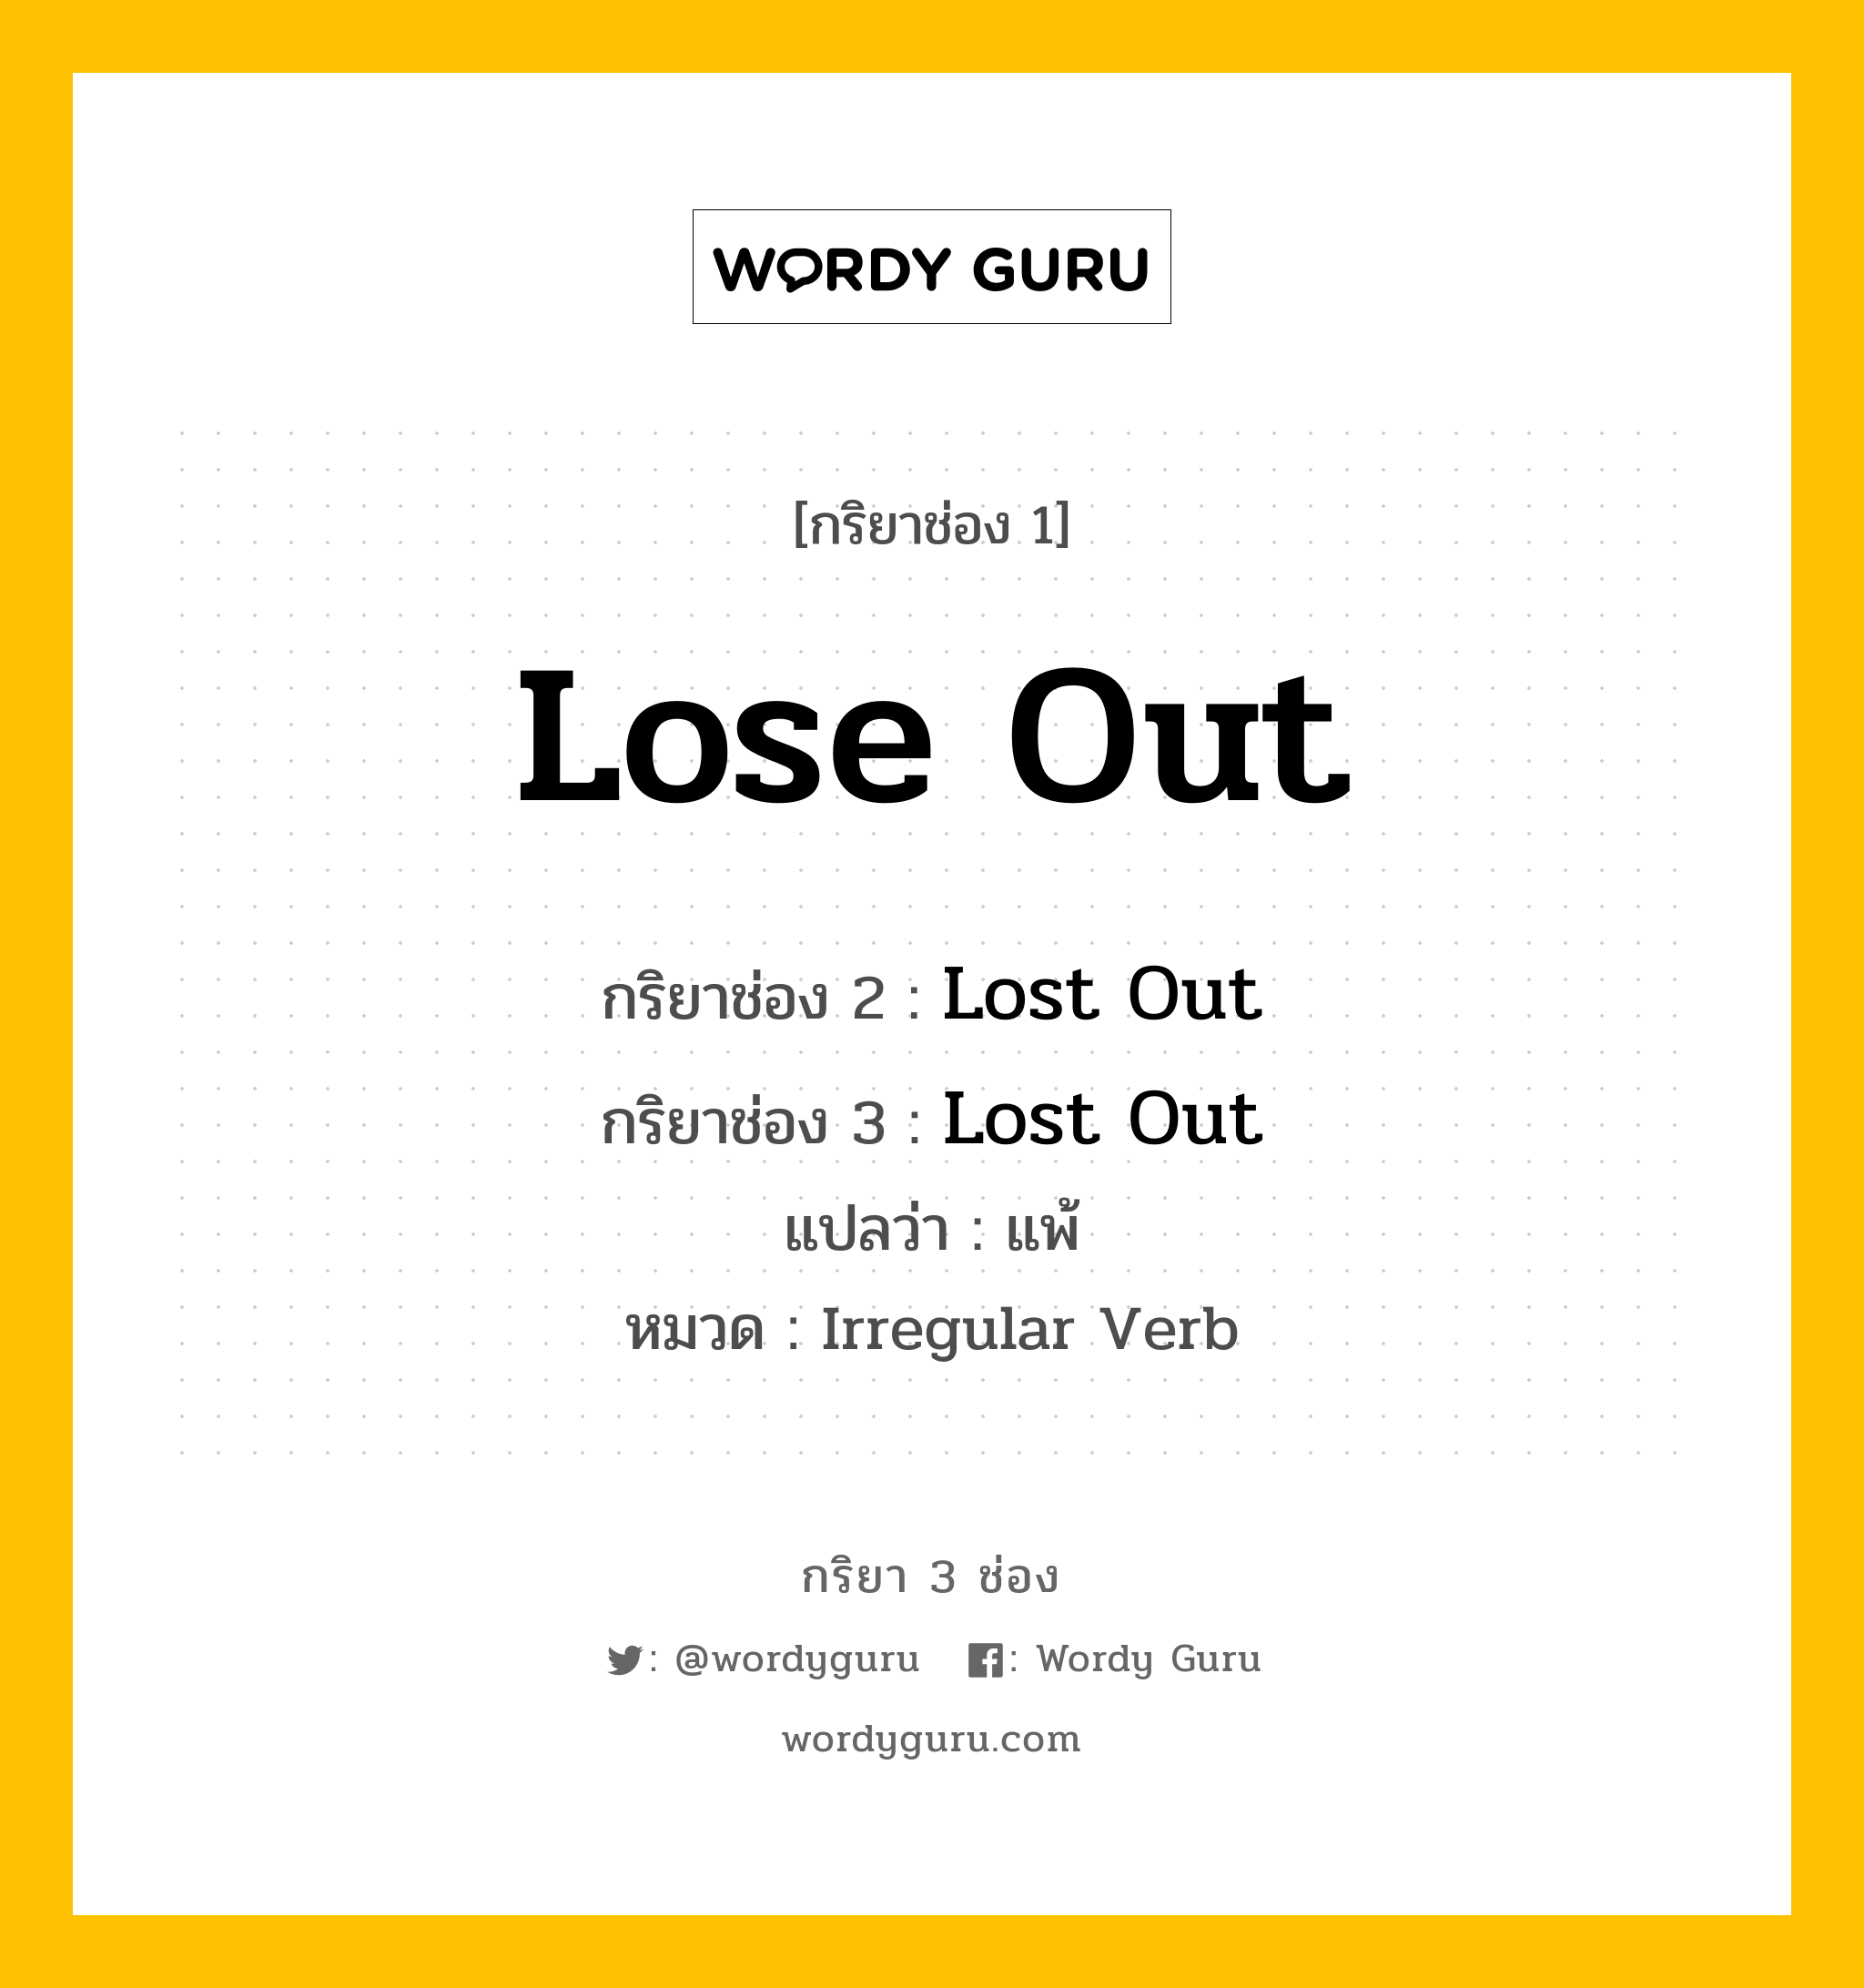 กริยา 3 ช่อง: Lose Out ช่อง 2 Lose Out ช่อง 3 คืออะไร, กริยาช่อง 1 Lose Out กริยาช่อง 2 Lost Out กริยาช่อง 3 Lost Out แปลว่า แพ้ หมวด Irregular Verb หมวด Irregular Verb